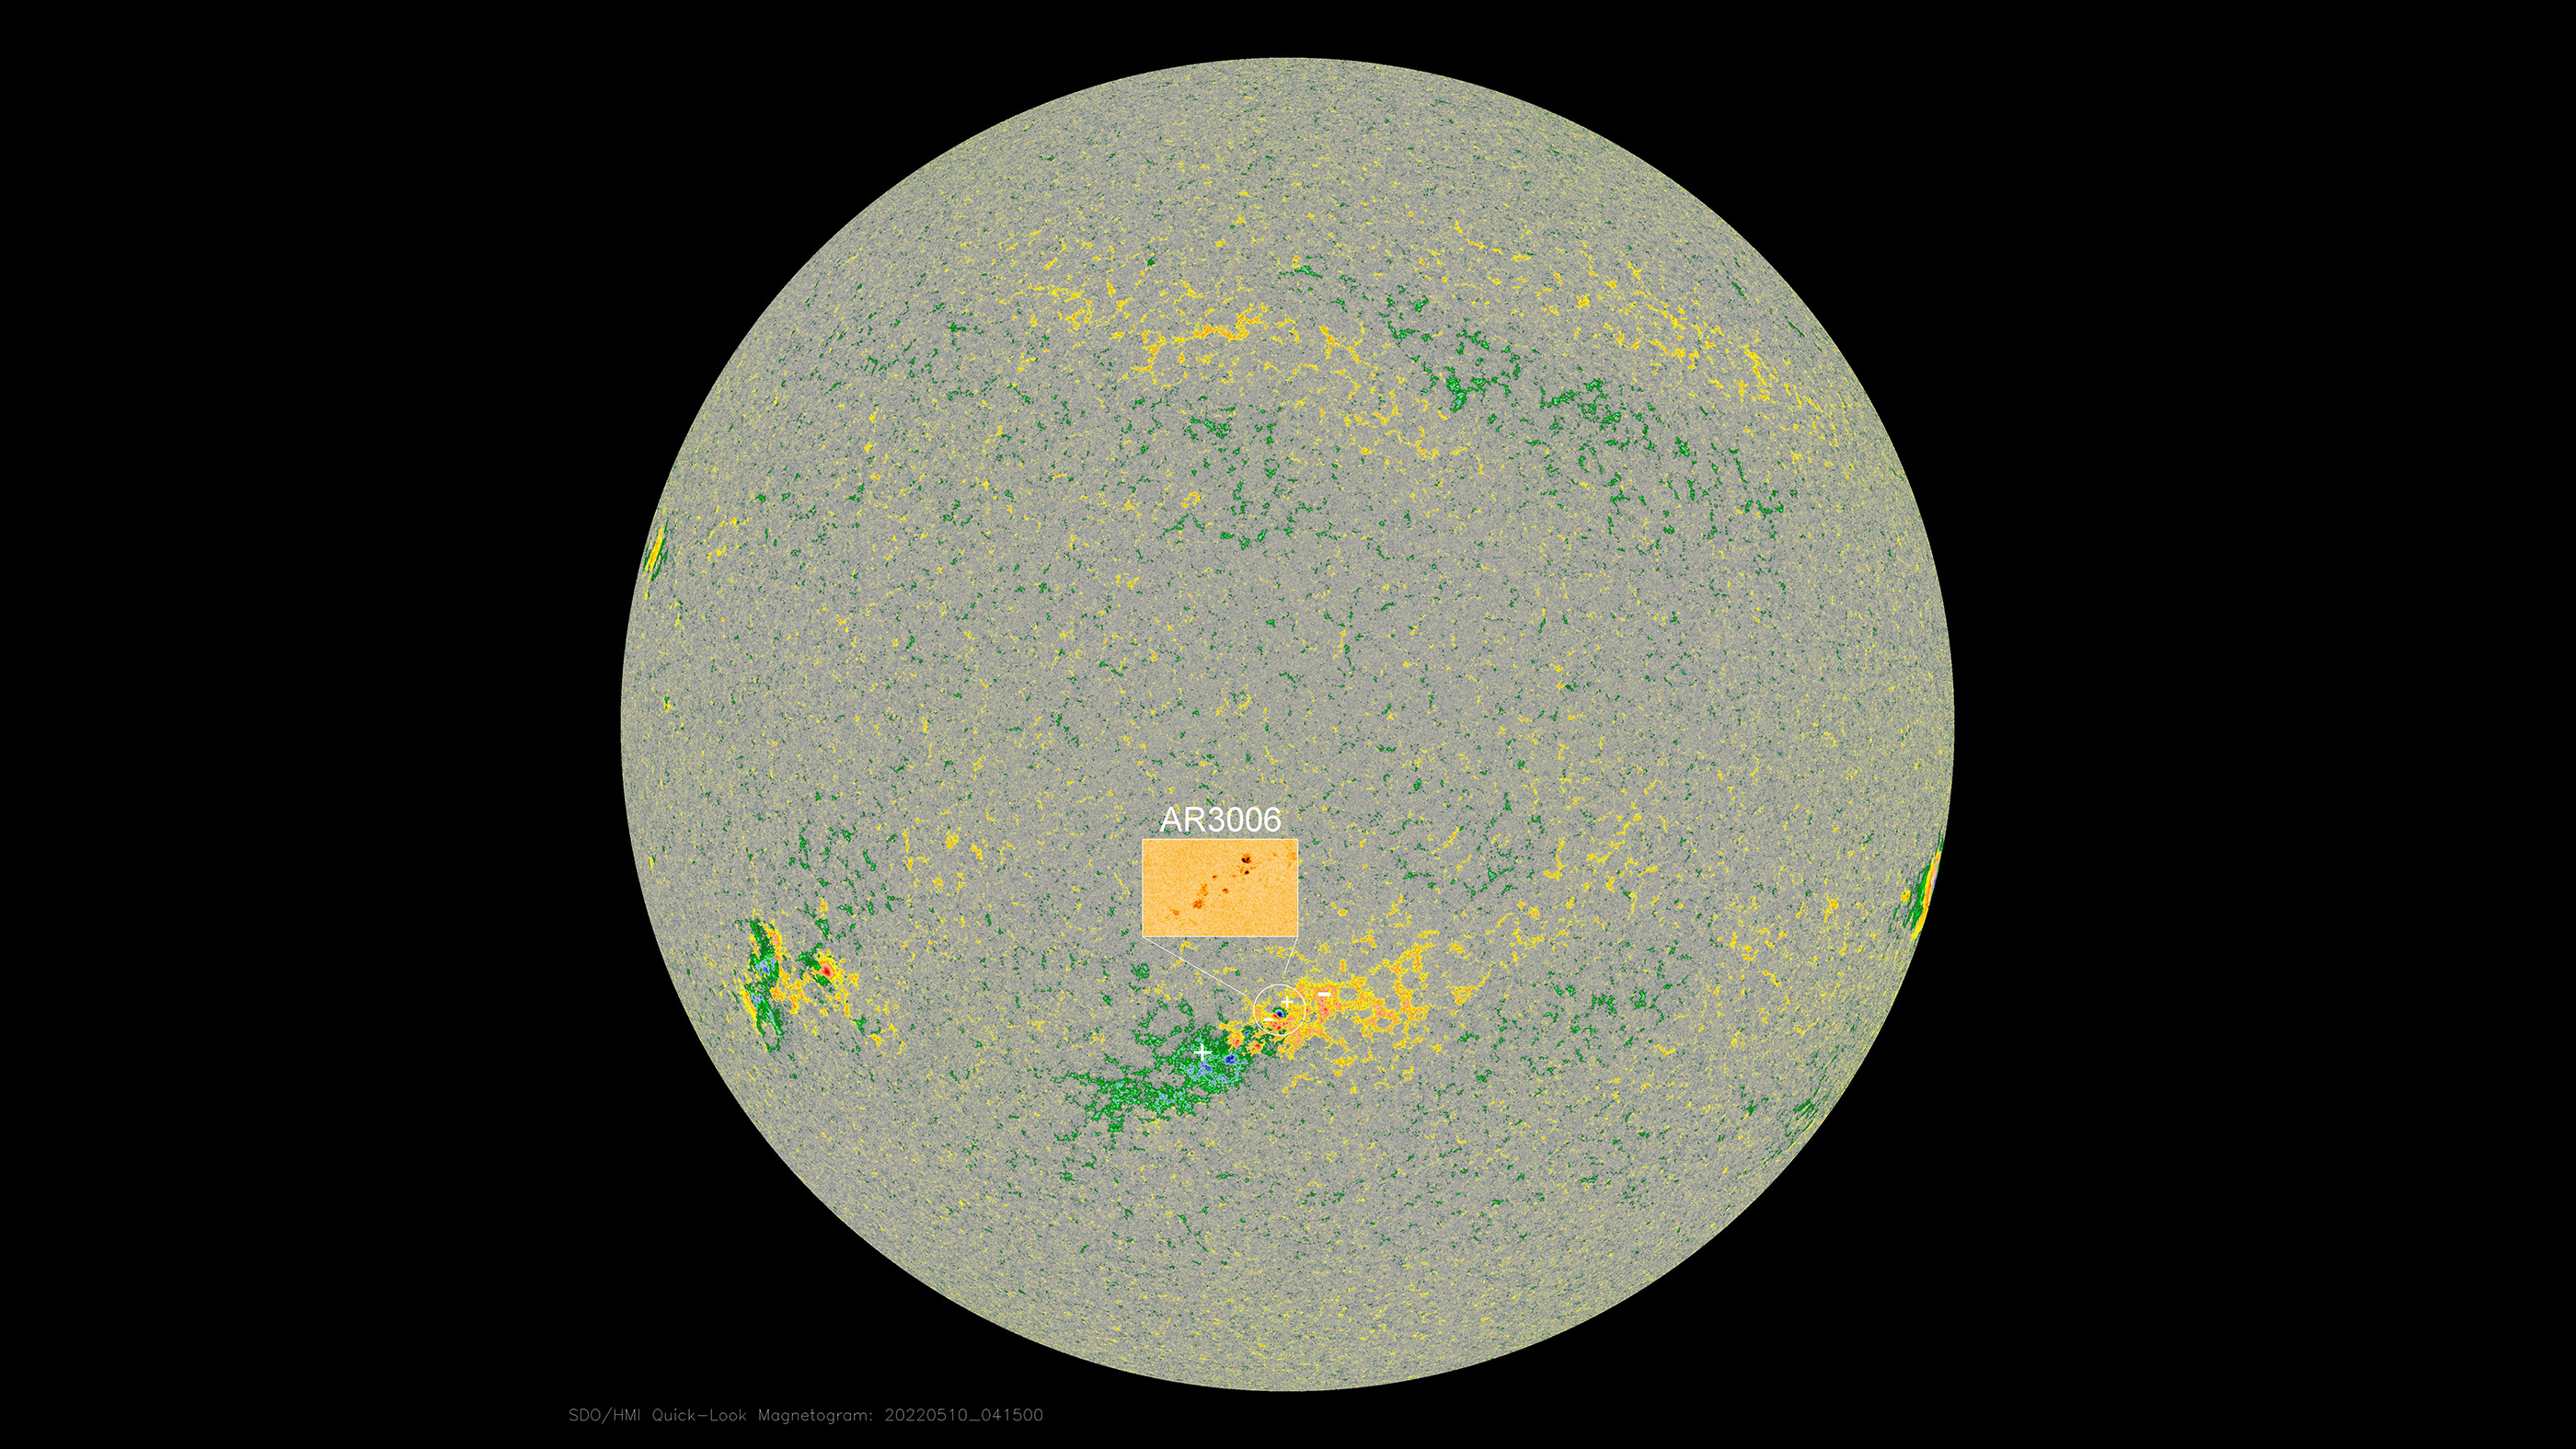 Регионът на слънчевите петна AR3006 беше забелязан за първи път преди няколко дни и сега се завъртя близо до центъра на видимия диск на слънцето, насочен почти директно към Земята.